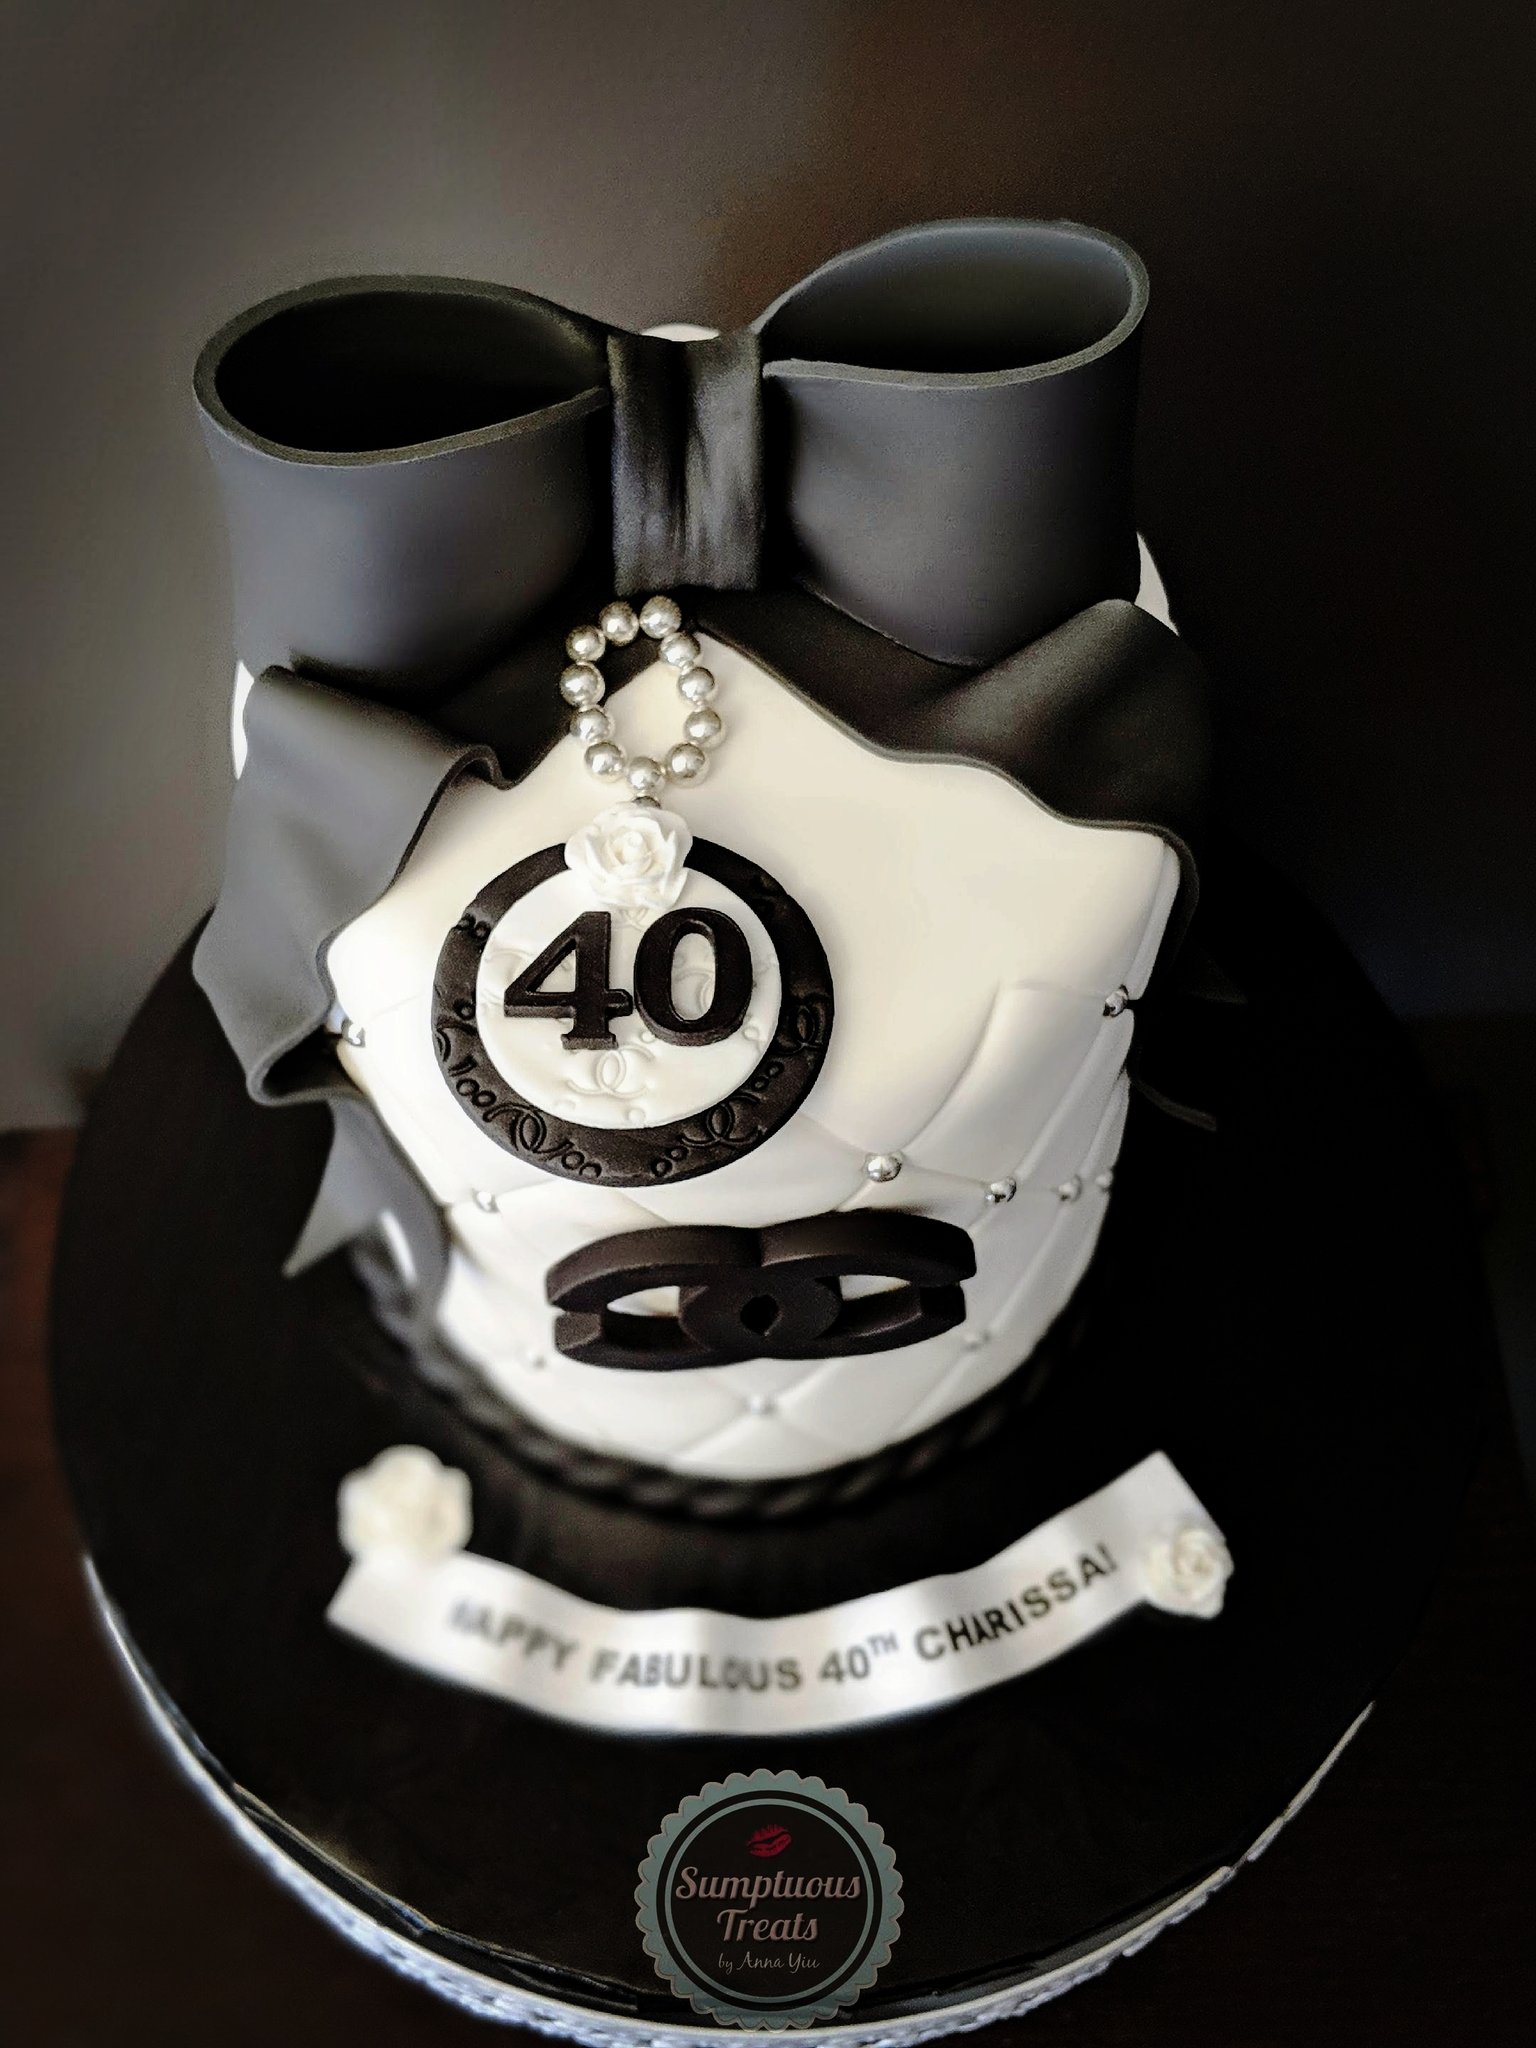 Sumptuous Treats on X: CHANEL Black & White Birthday #chanel  #blackandwhite #40th #40thbirthdaycakes #chanelcake #cake #cakesfondant  #birthdaygirl #cakeartisttoronto #customcakes    / X